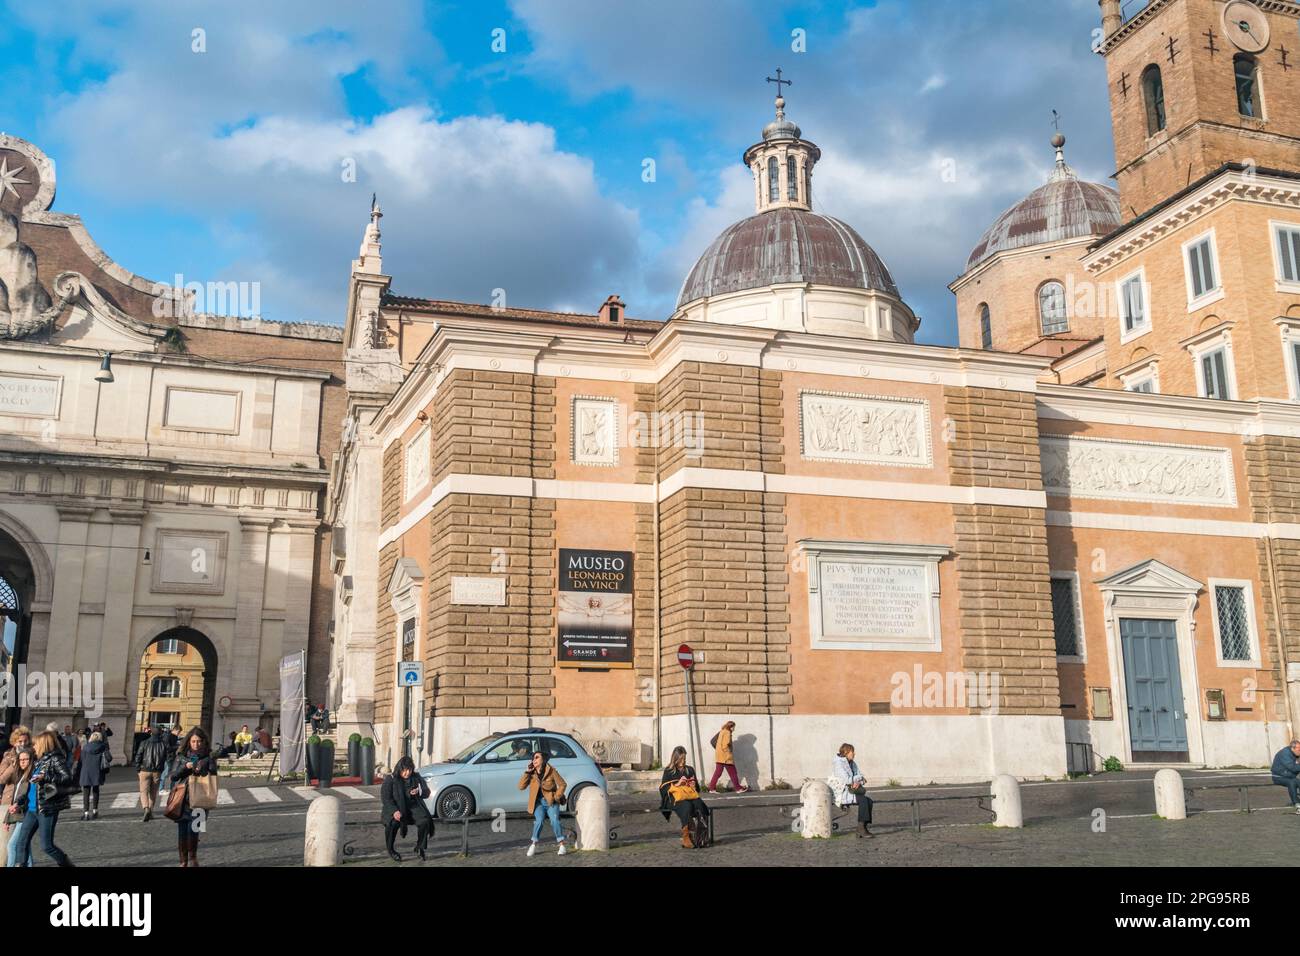 Roma, Italia - 8 dicembre 2022: Museo Leonardo da Vinci. Museo dedicato a Leonardo di ser Piero da Vinci. Foto Stock